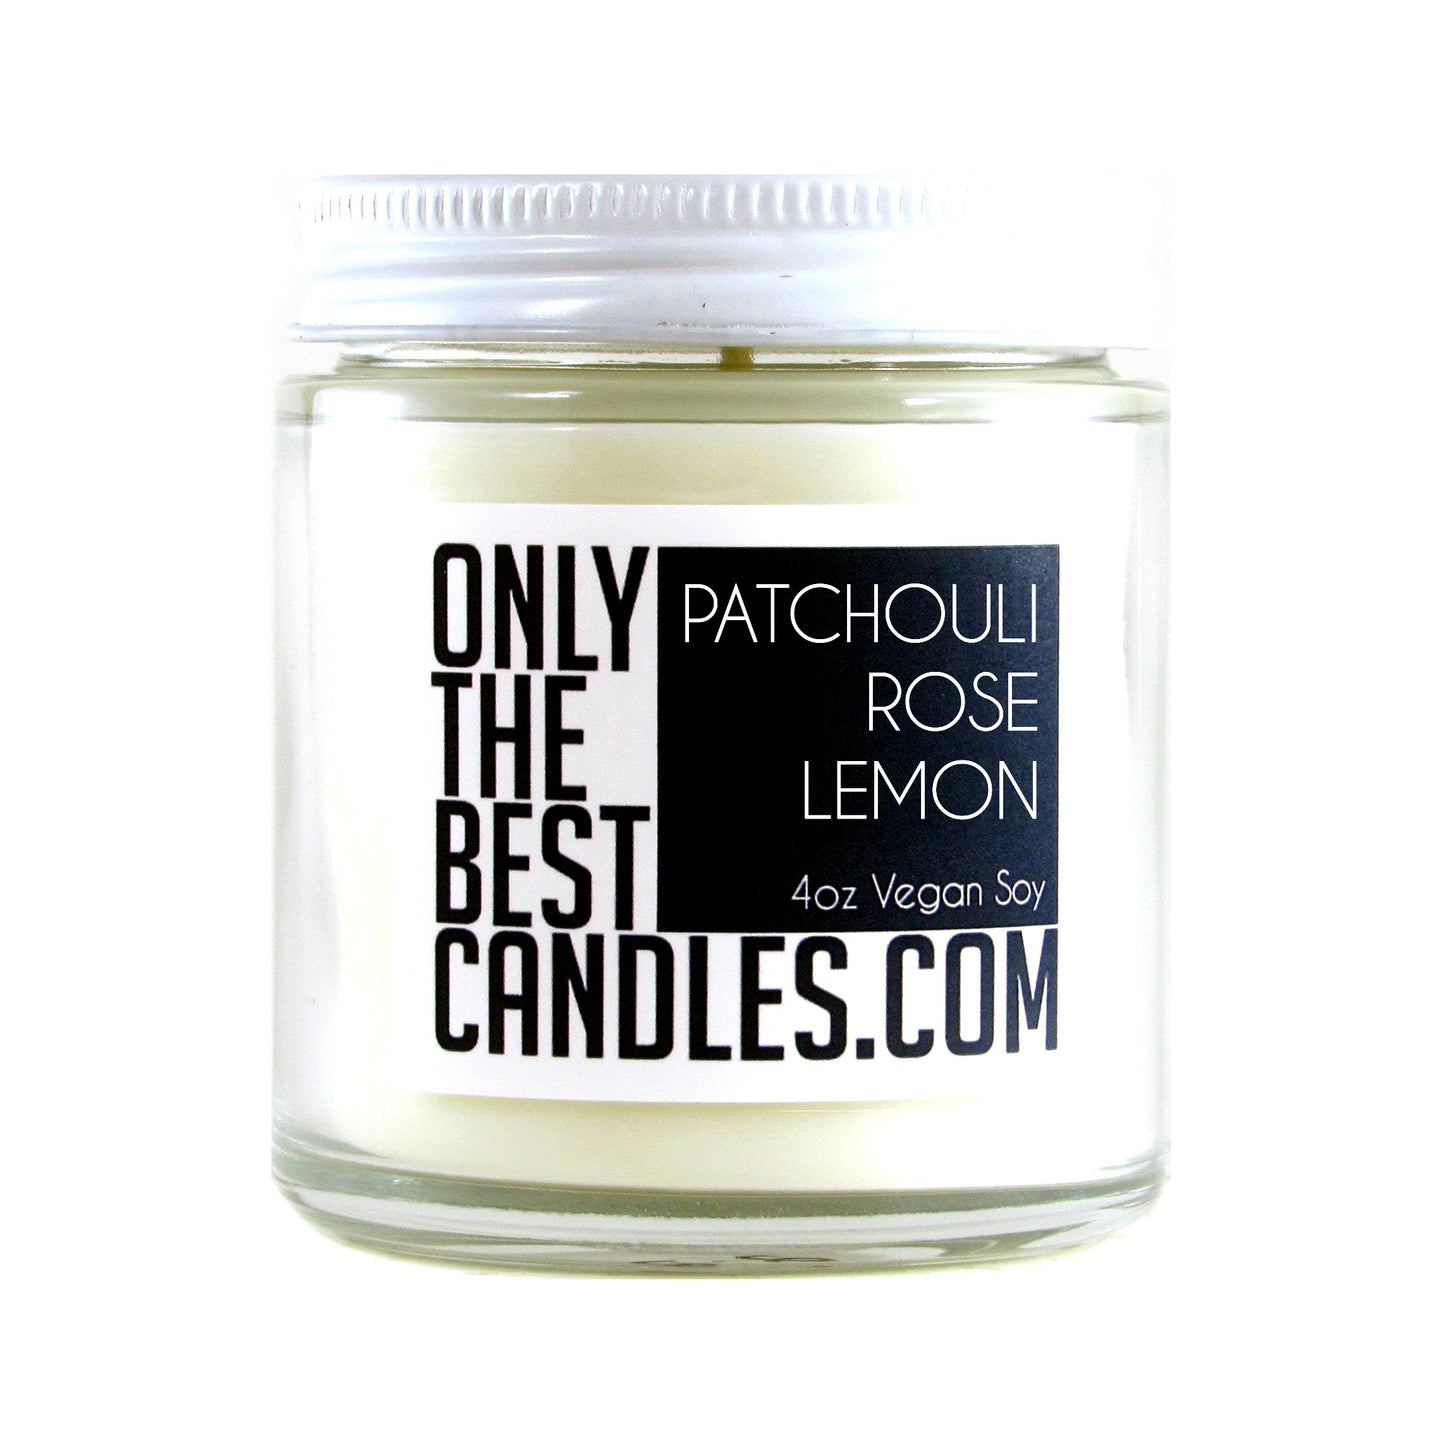 Patchouli Rose Lemon 4oz Candle